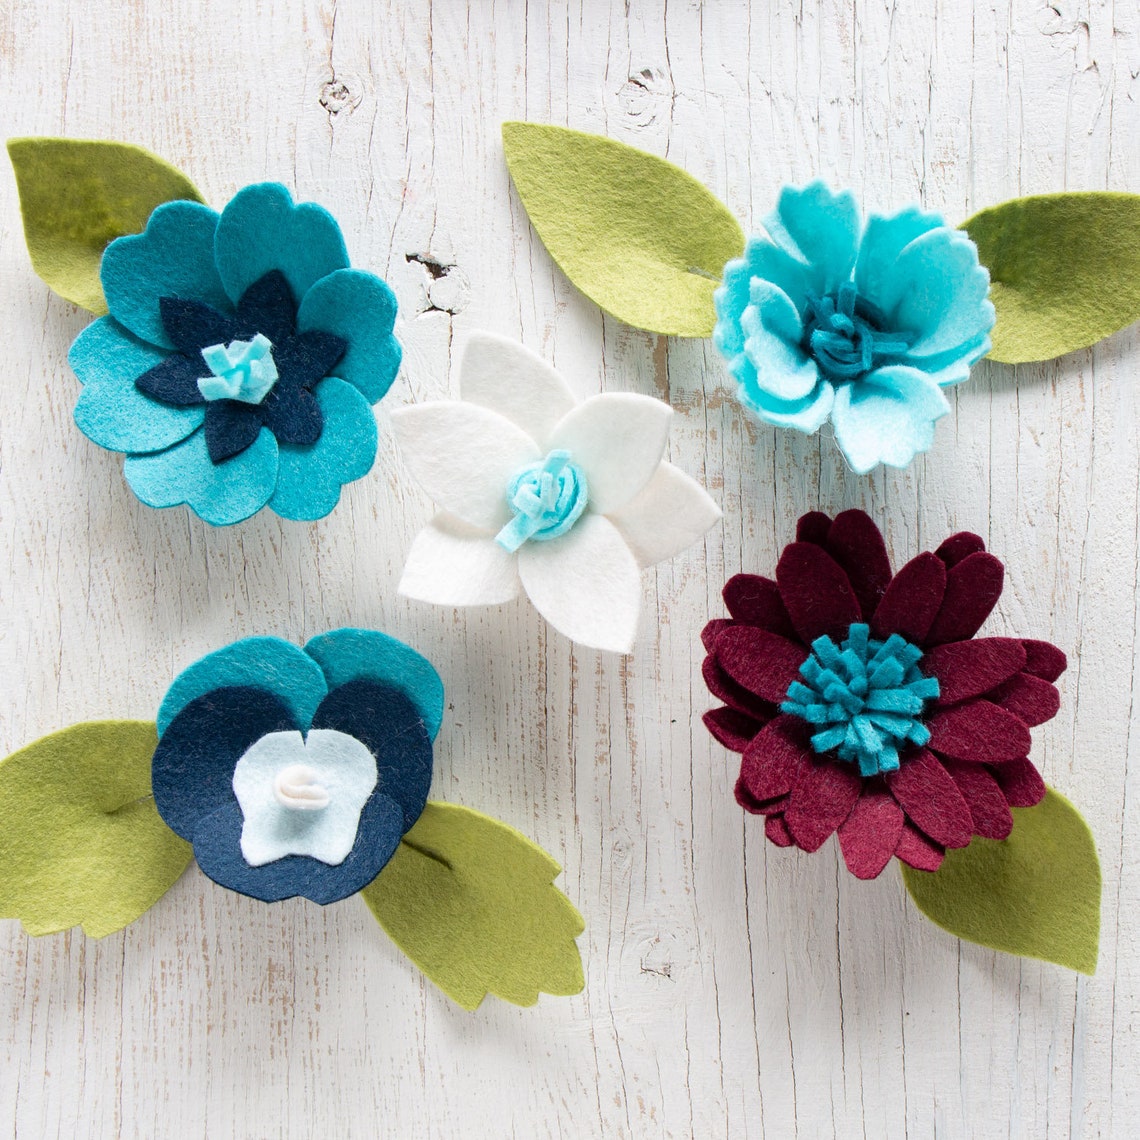 Felt Flower SVG Files for Cricut Silhouette Floral cut file | Etsy